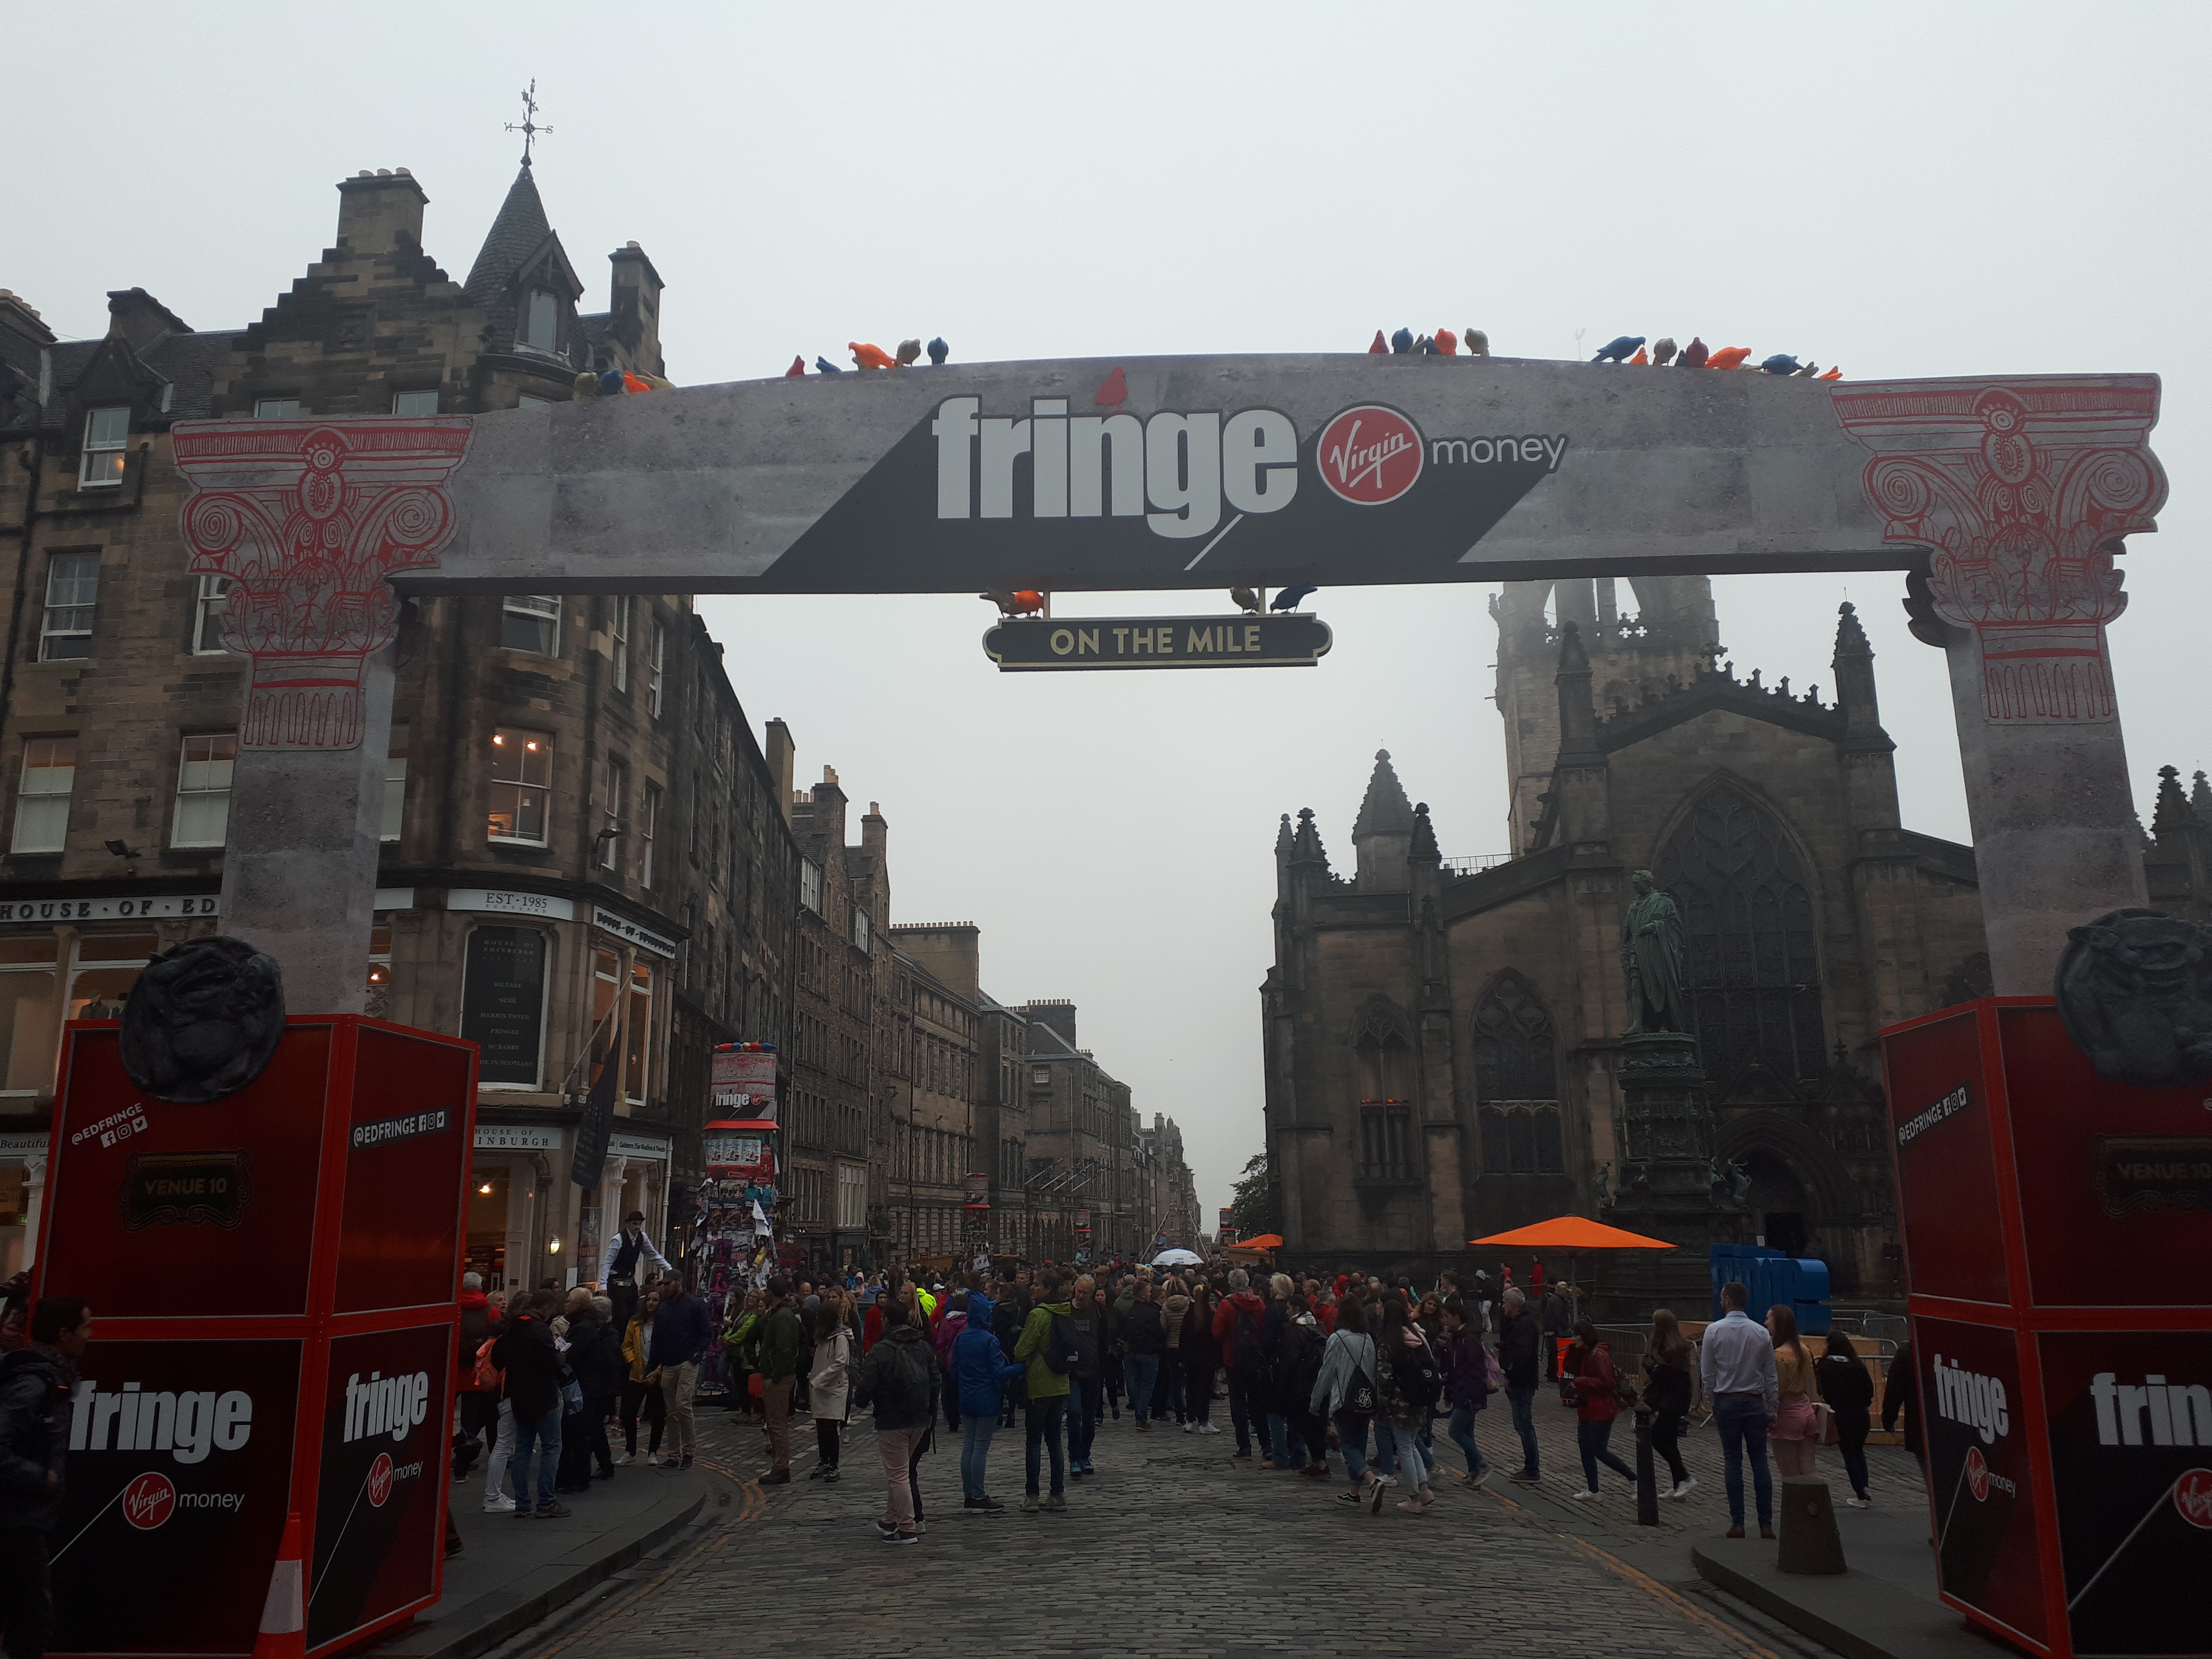 Fringe-festivaalin portti vilkkaalla kävelykadulla Edinburghissa.